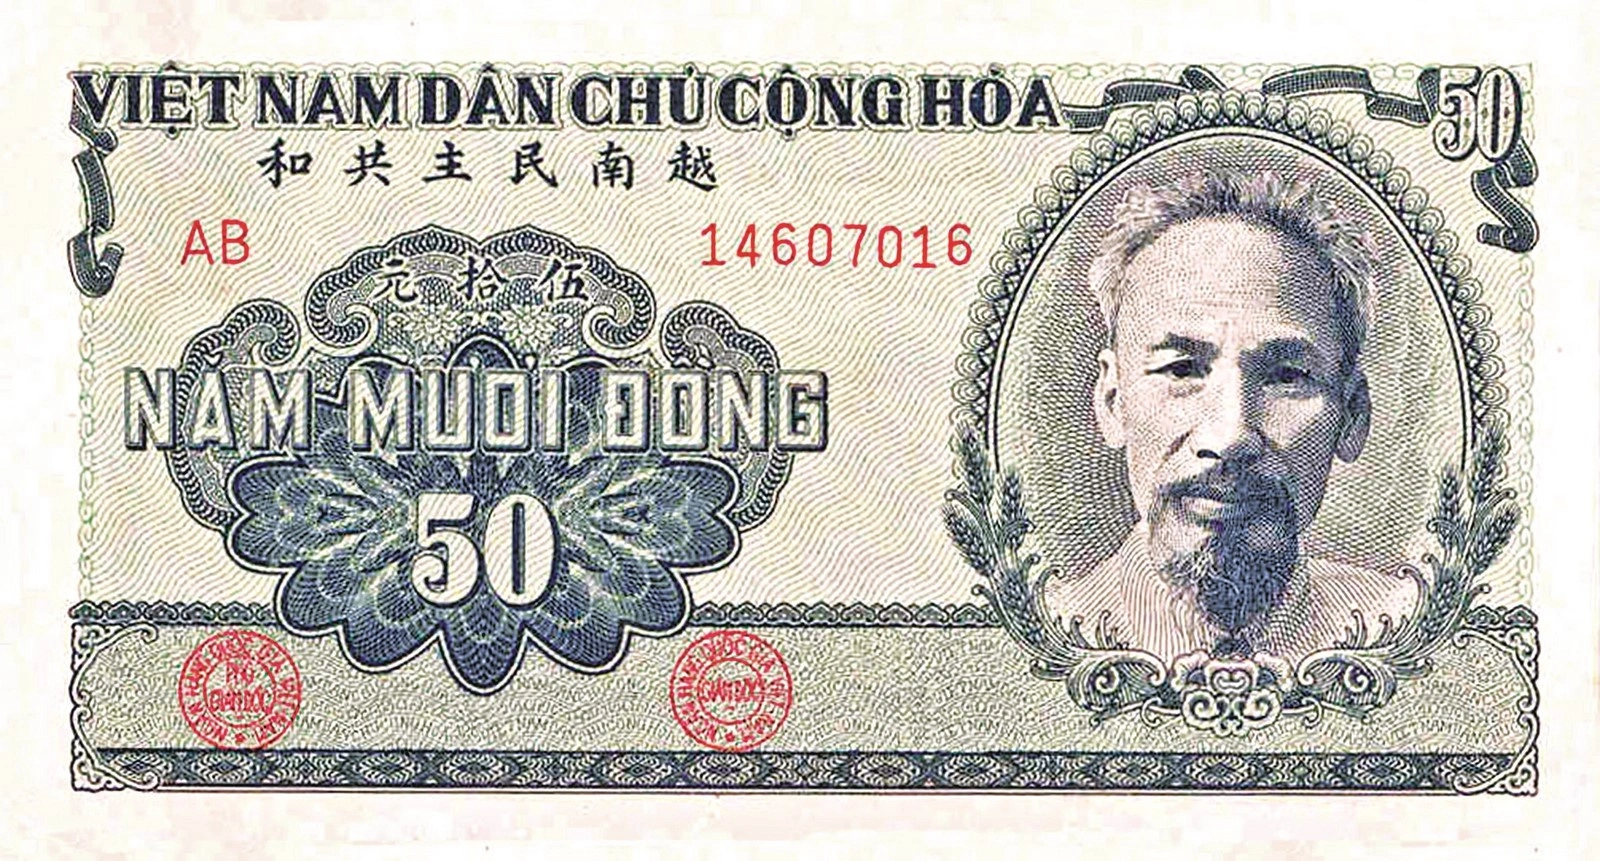 Nổi bật và xuyên suốt trên các đồng tiền do Nhà nước ta phát hành là hình ảnh Chủ tịch Hồ Chí Minh k